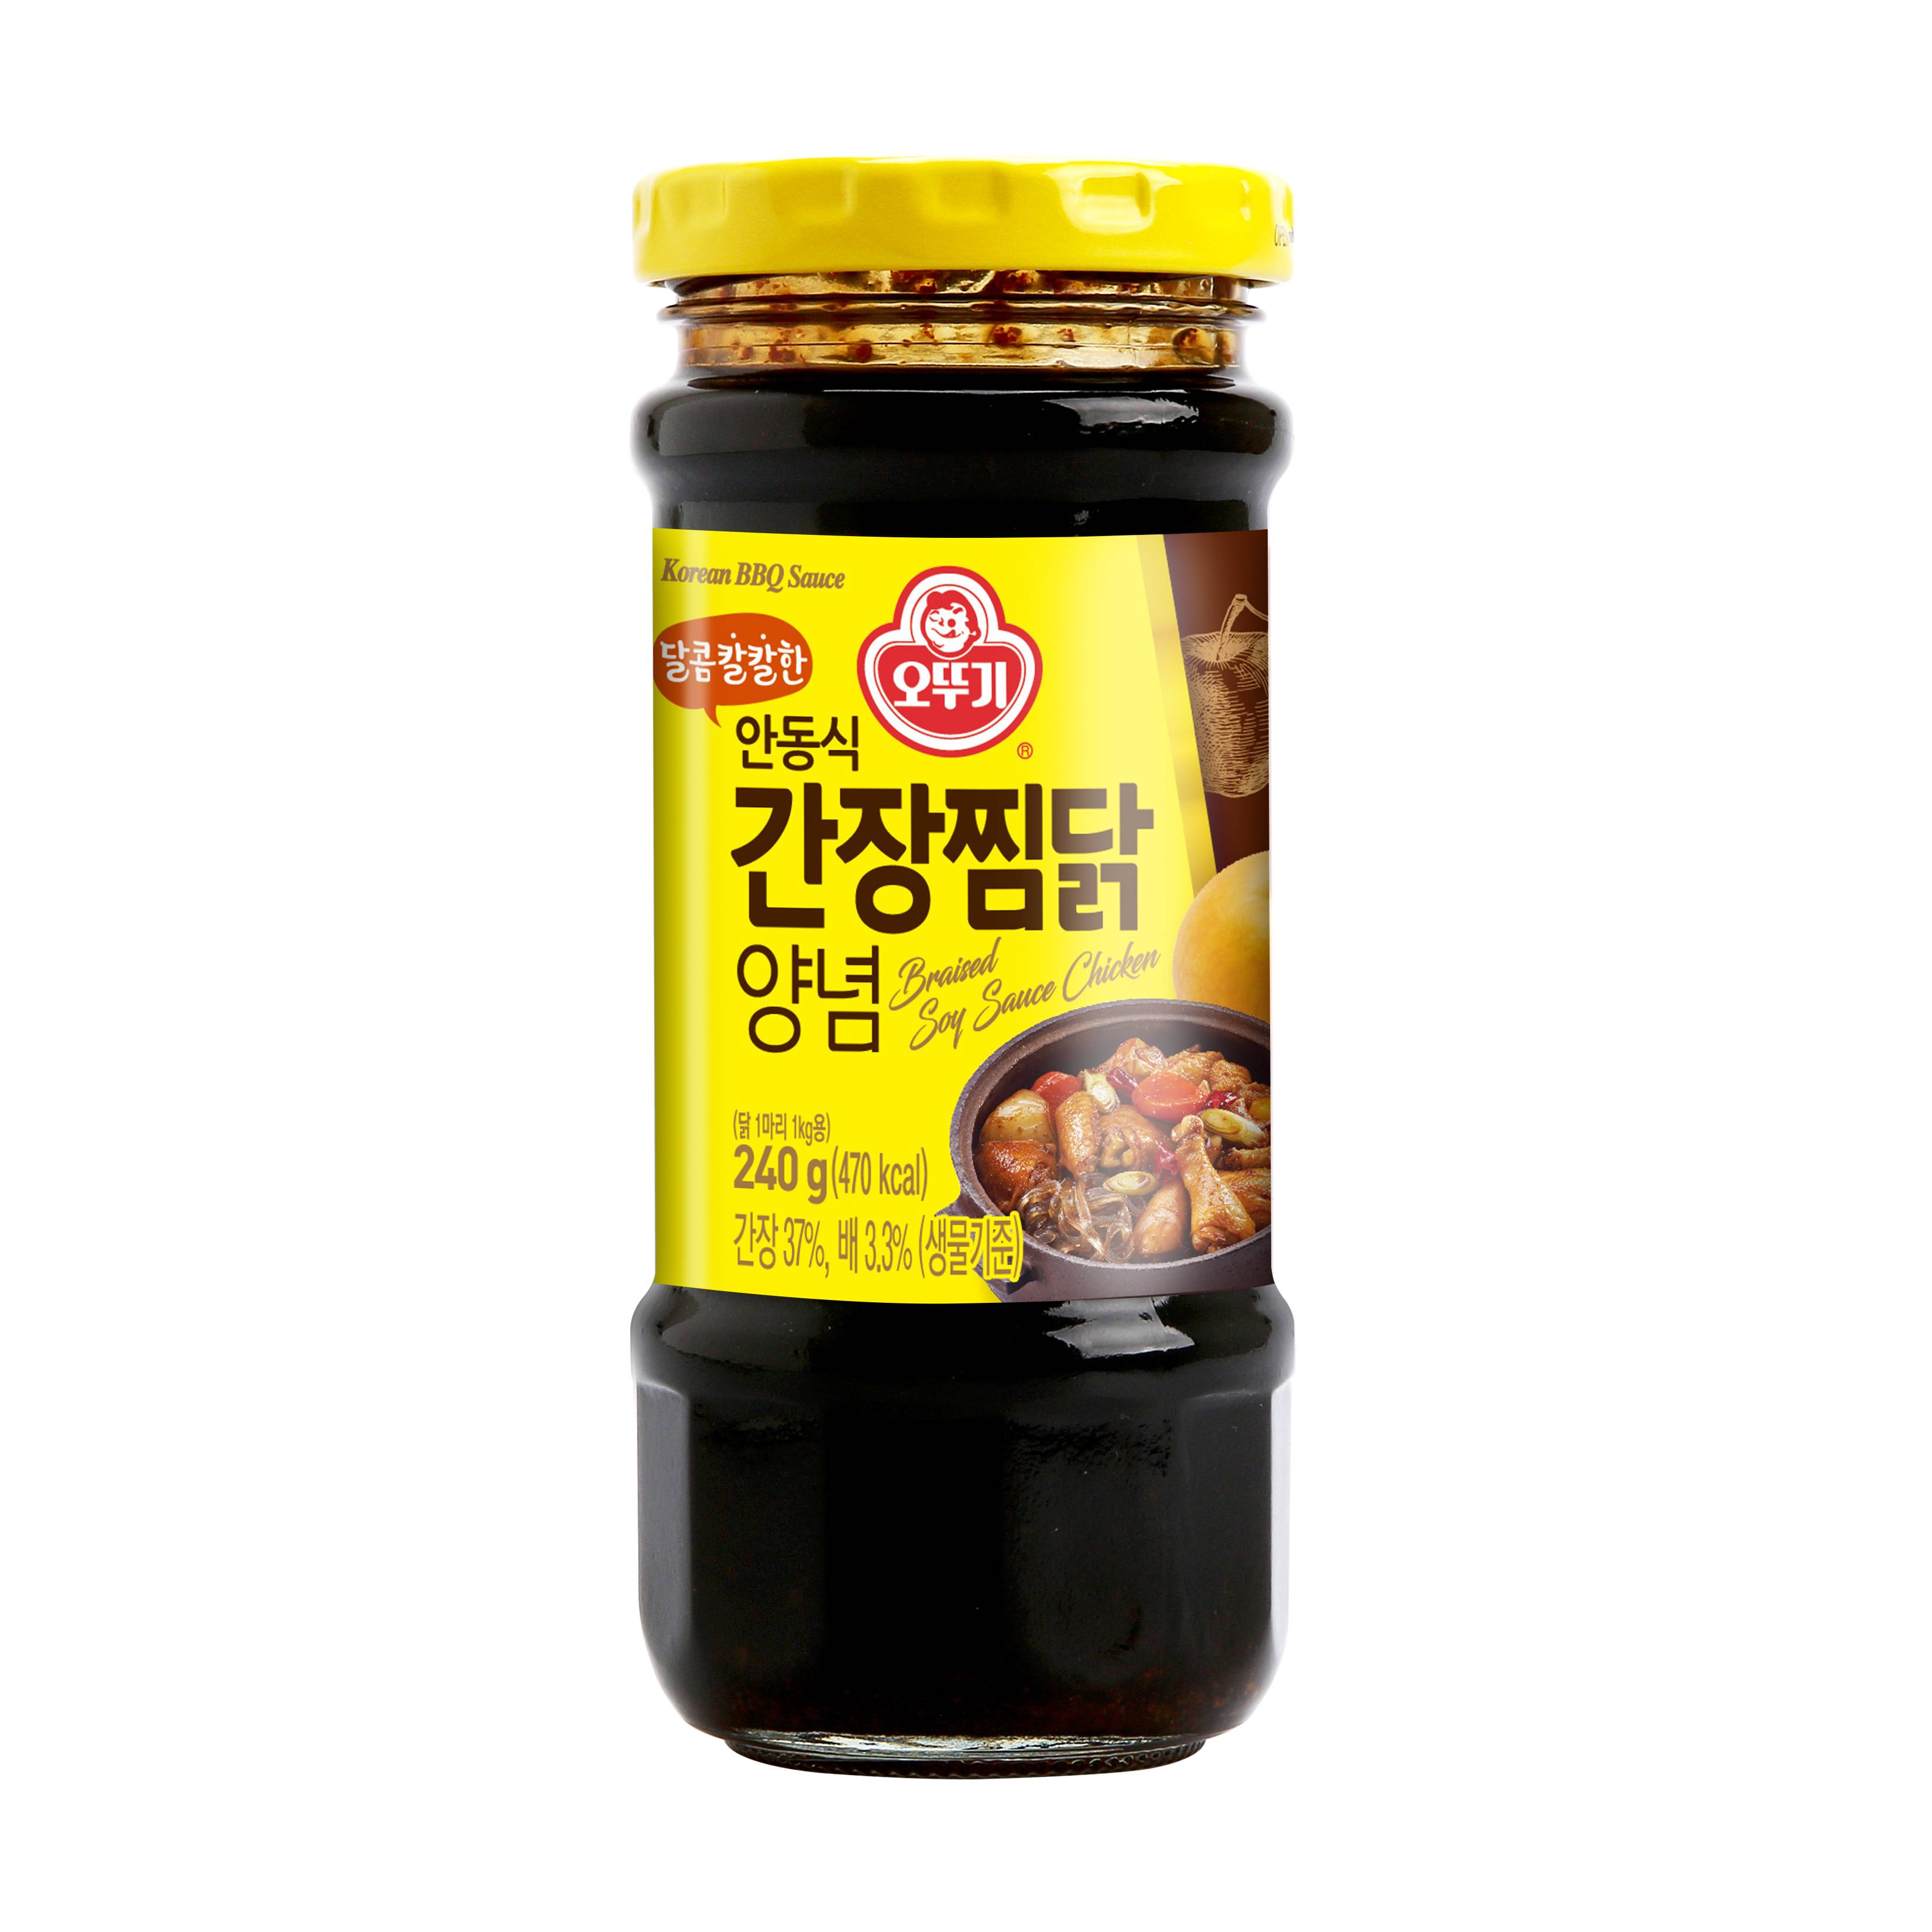 KOREAN SAUCE FOR SOYBEAN BRAISED CHICKEN